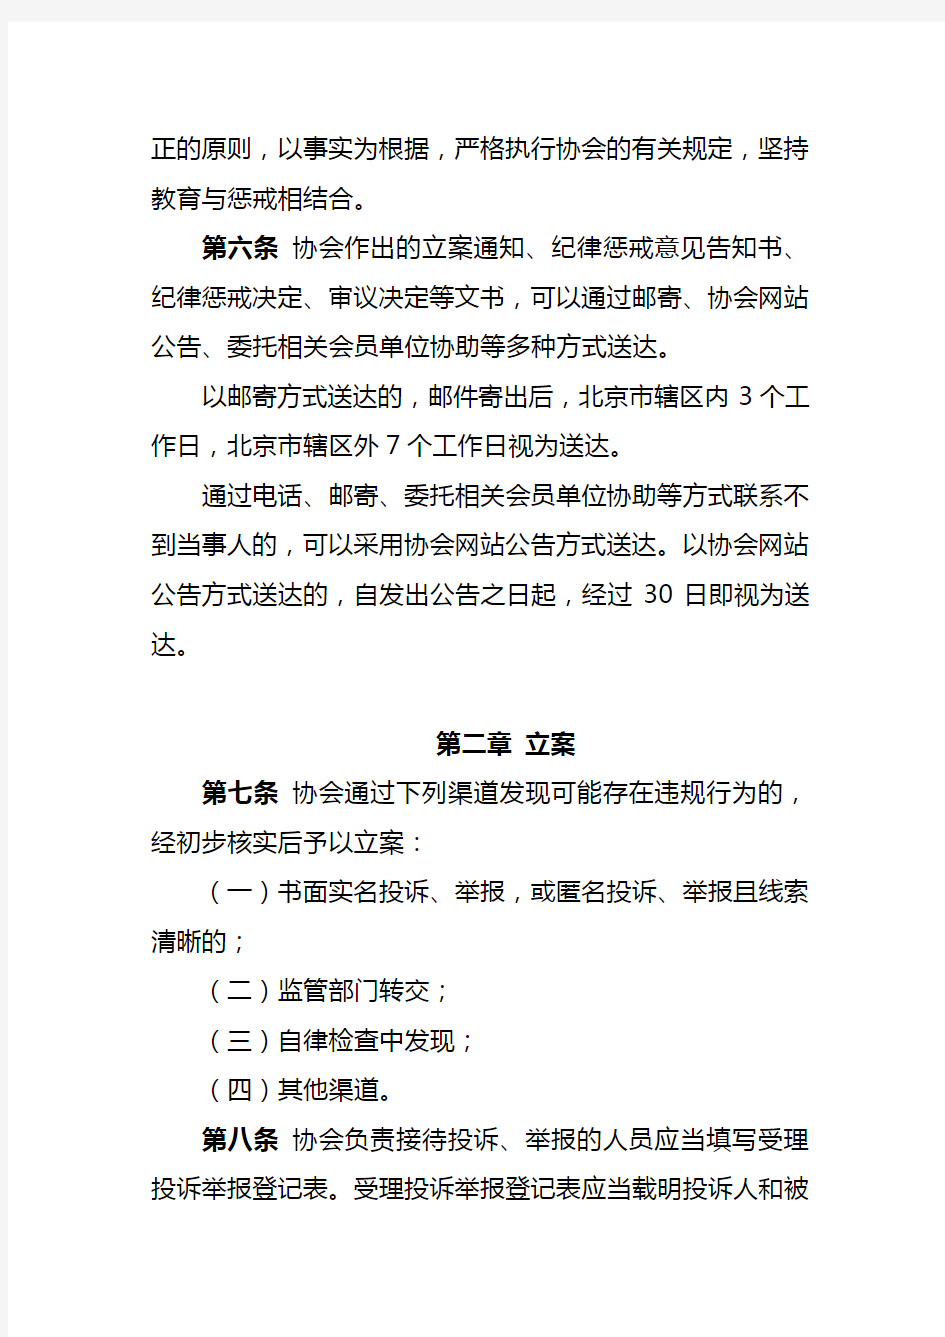 中国期货业协会纪律惩戒程序(修订)